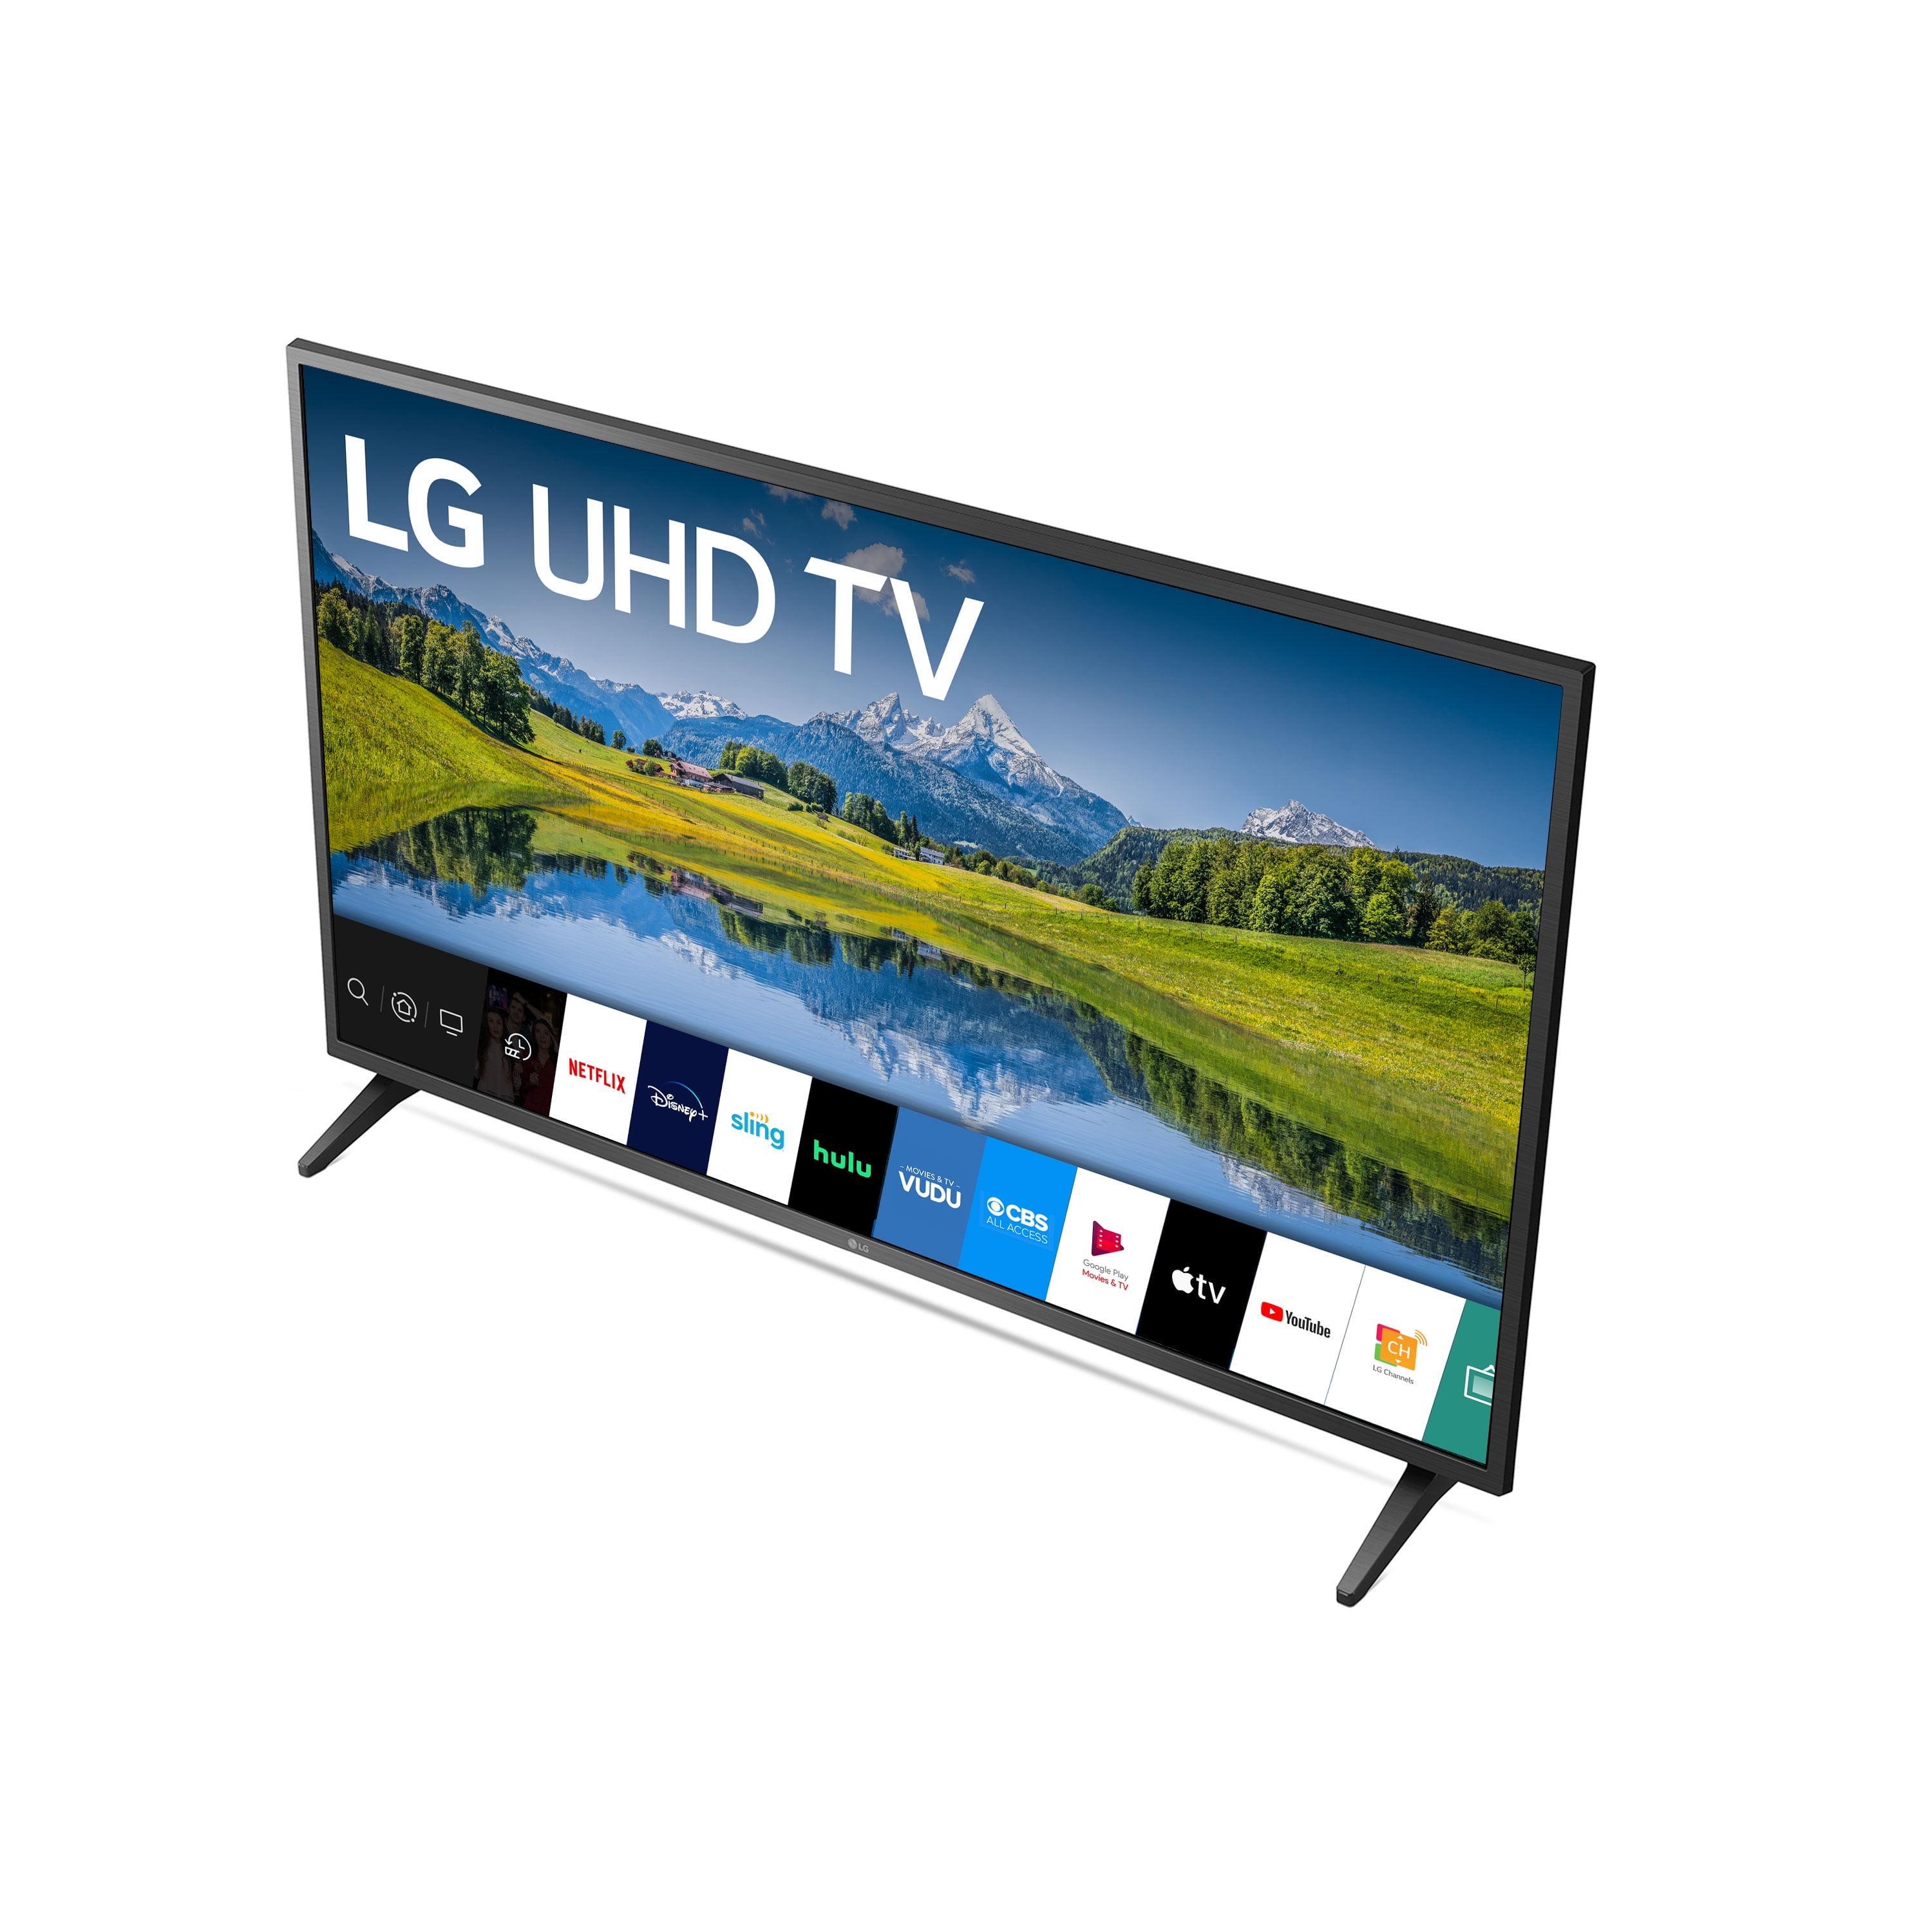 LG Class UHD 2160P Smart TV 65UN6955ZUF - Walmart.com